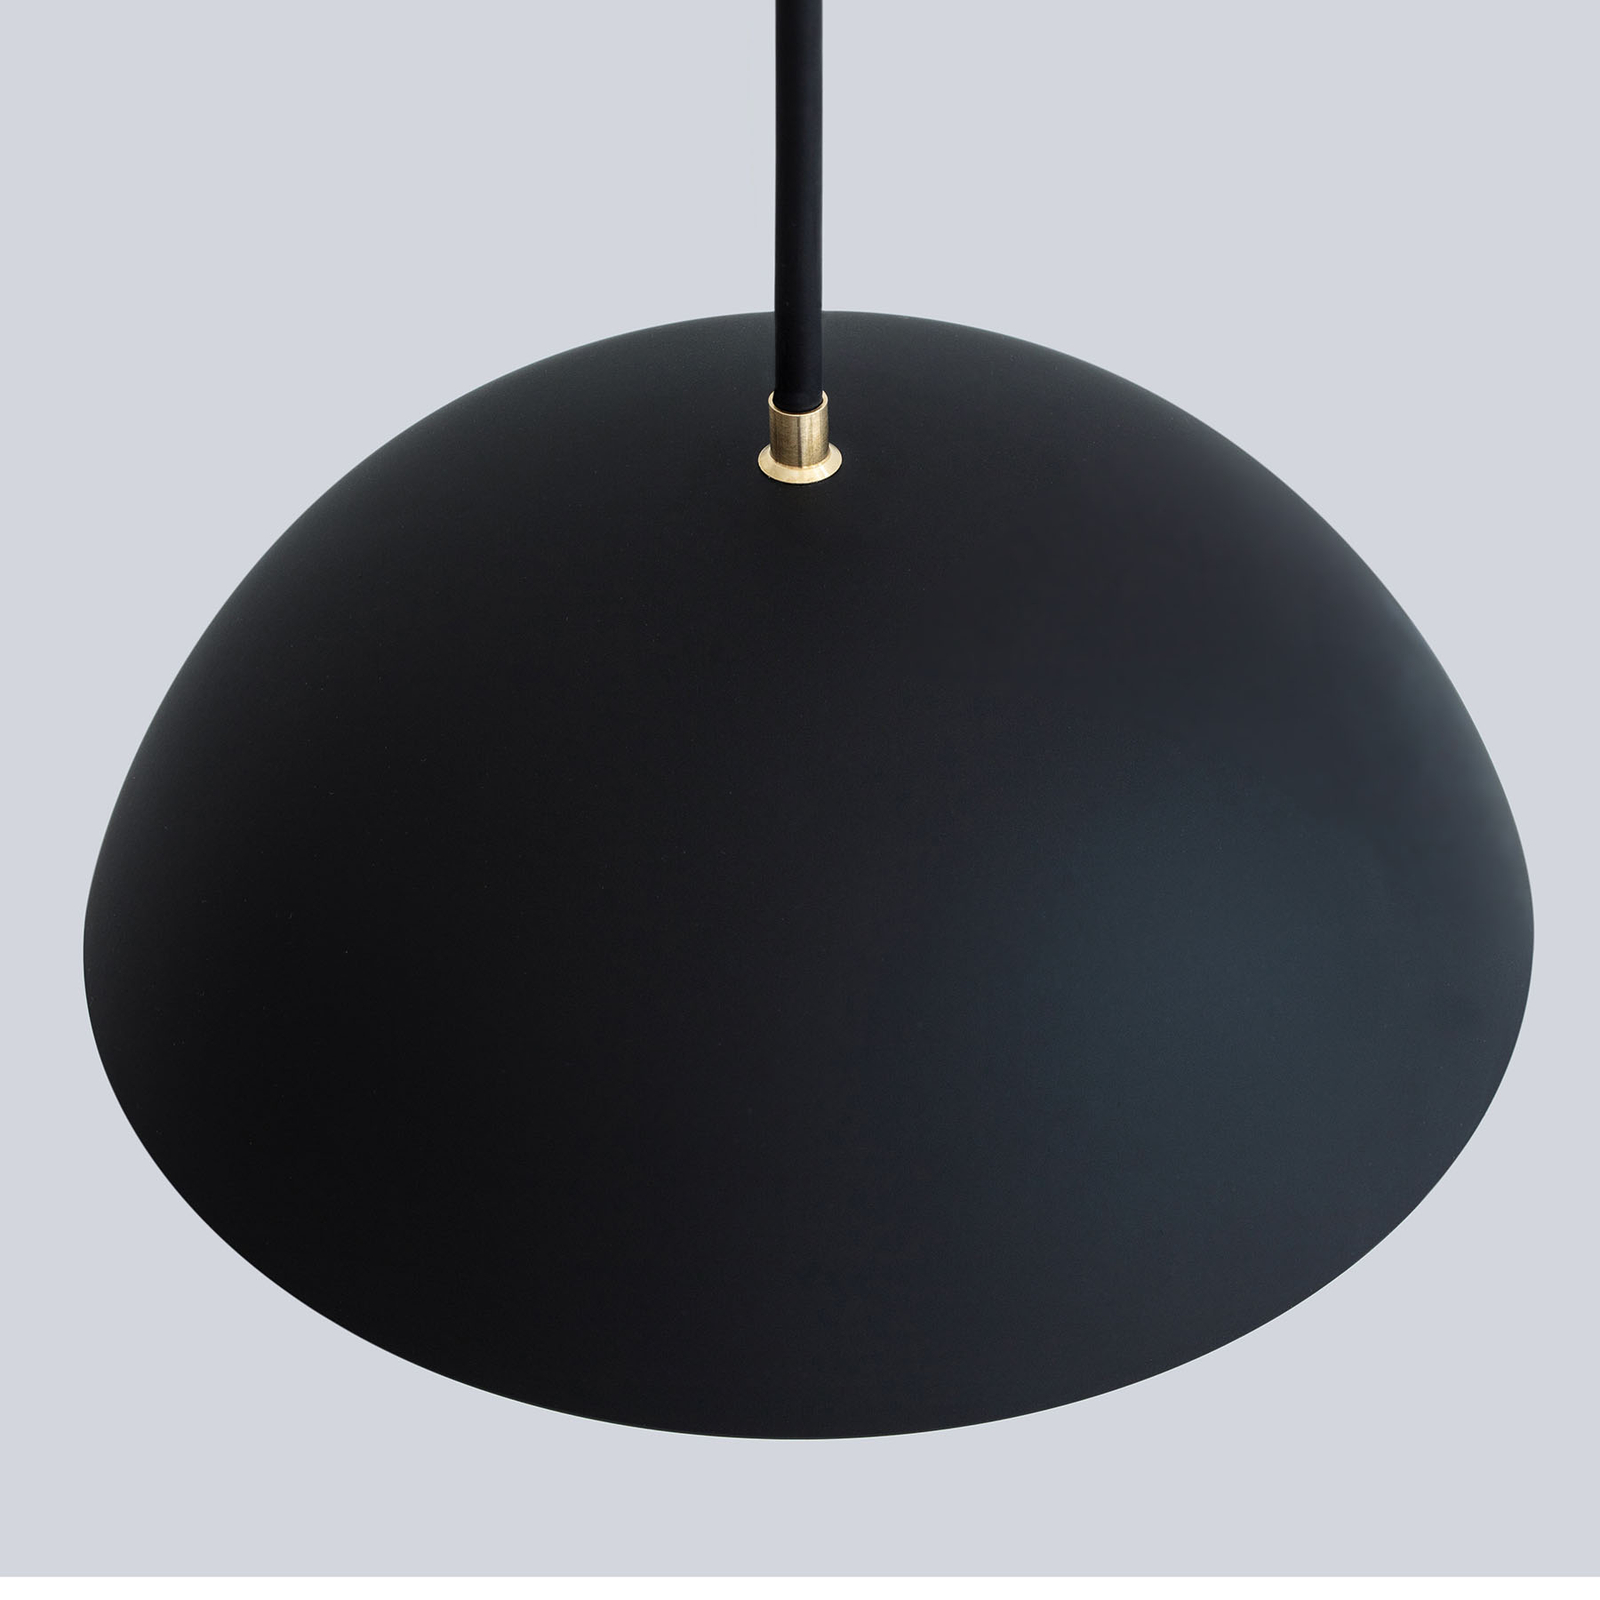 NYTA Pong Plafond LED hanglamp, kabellengte 5m